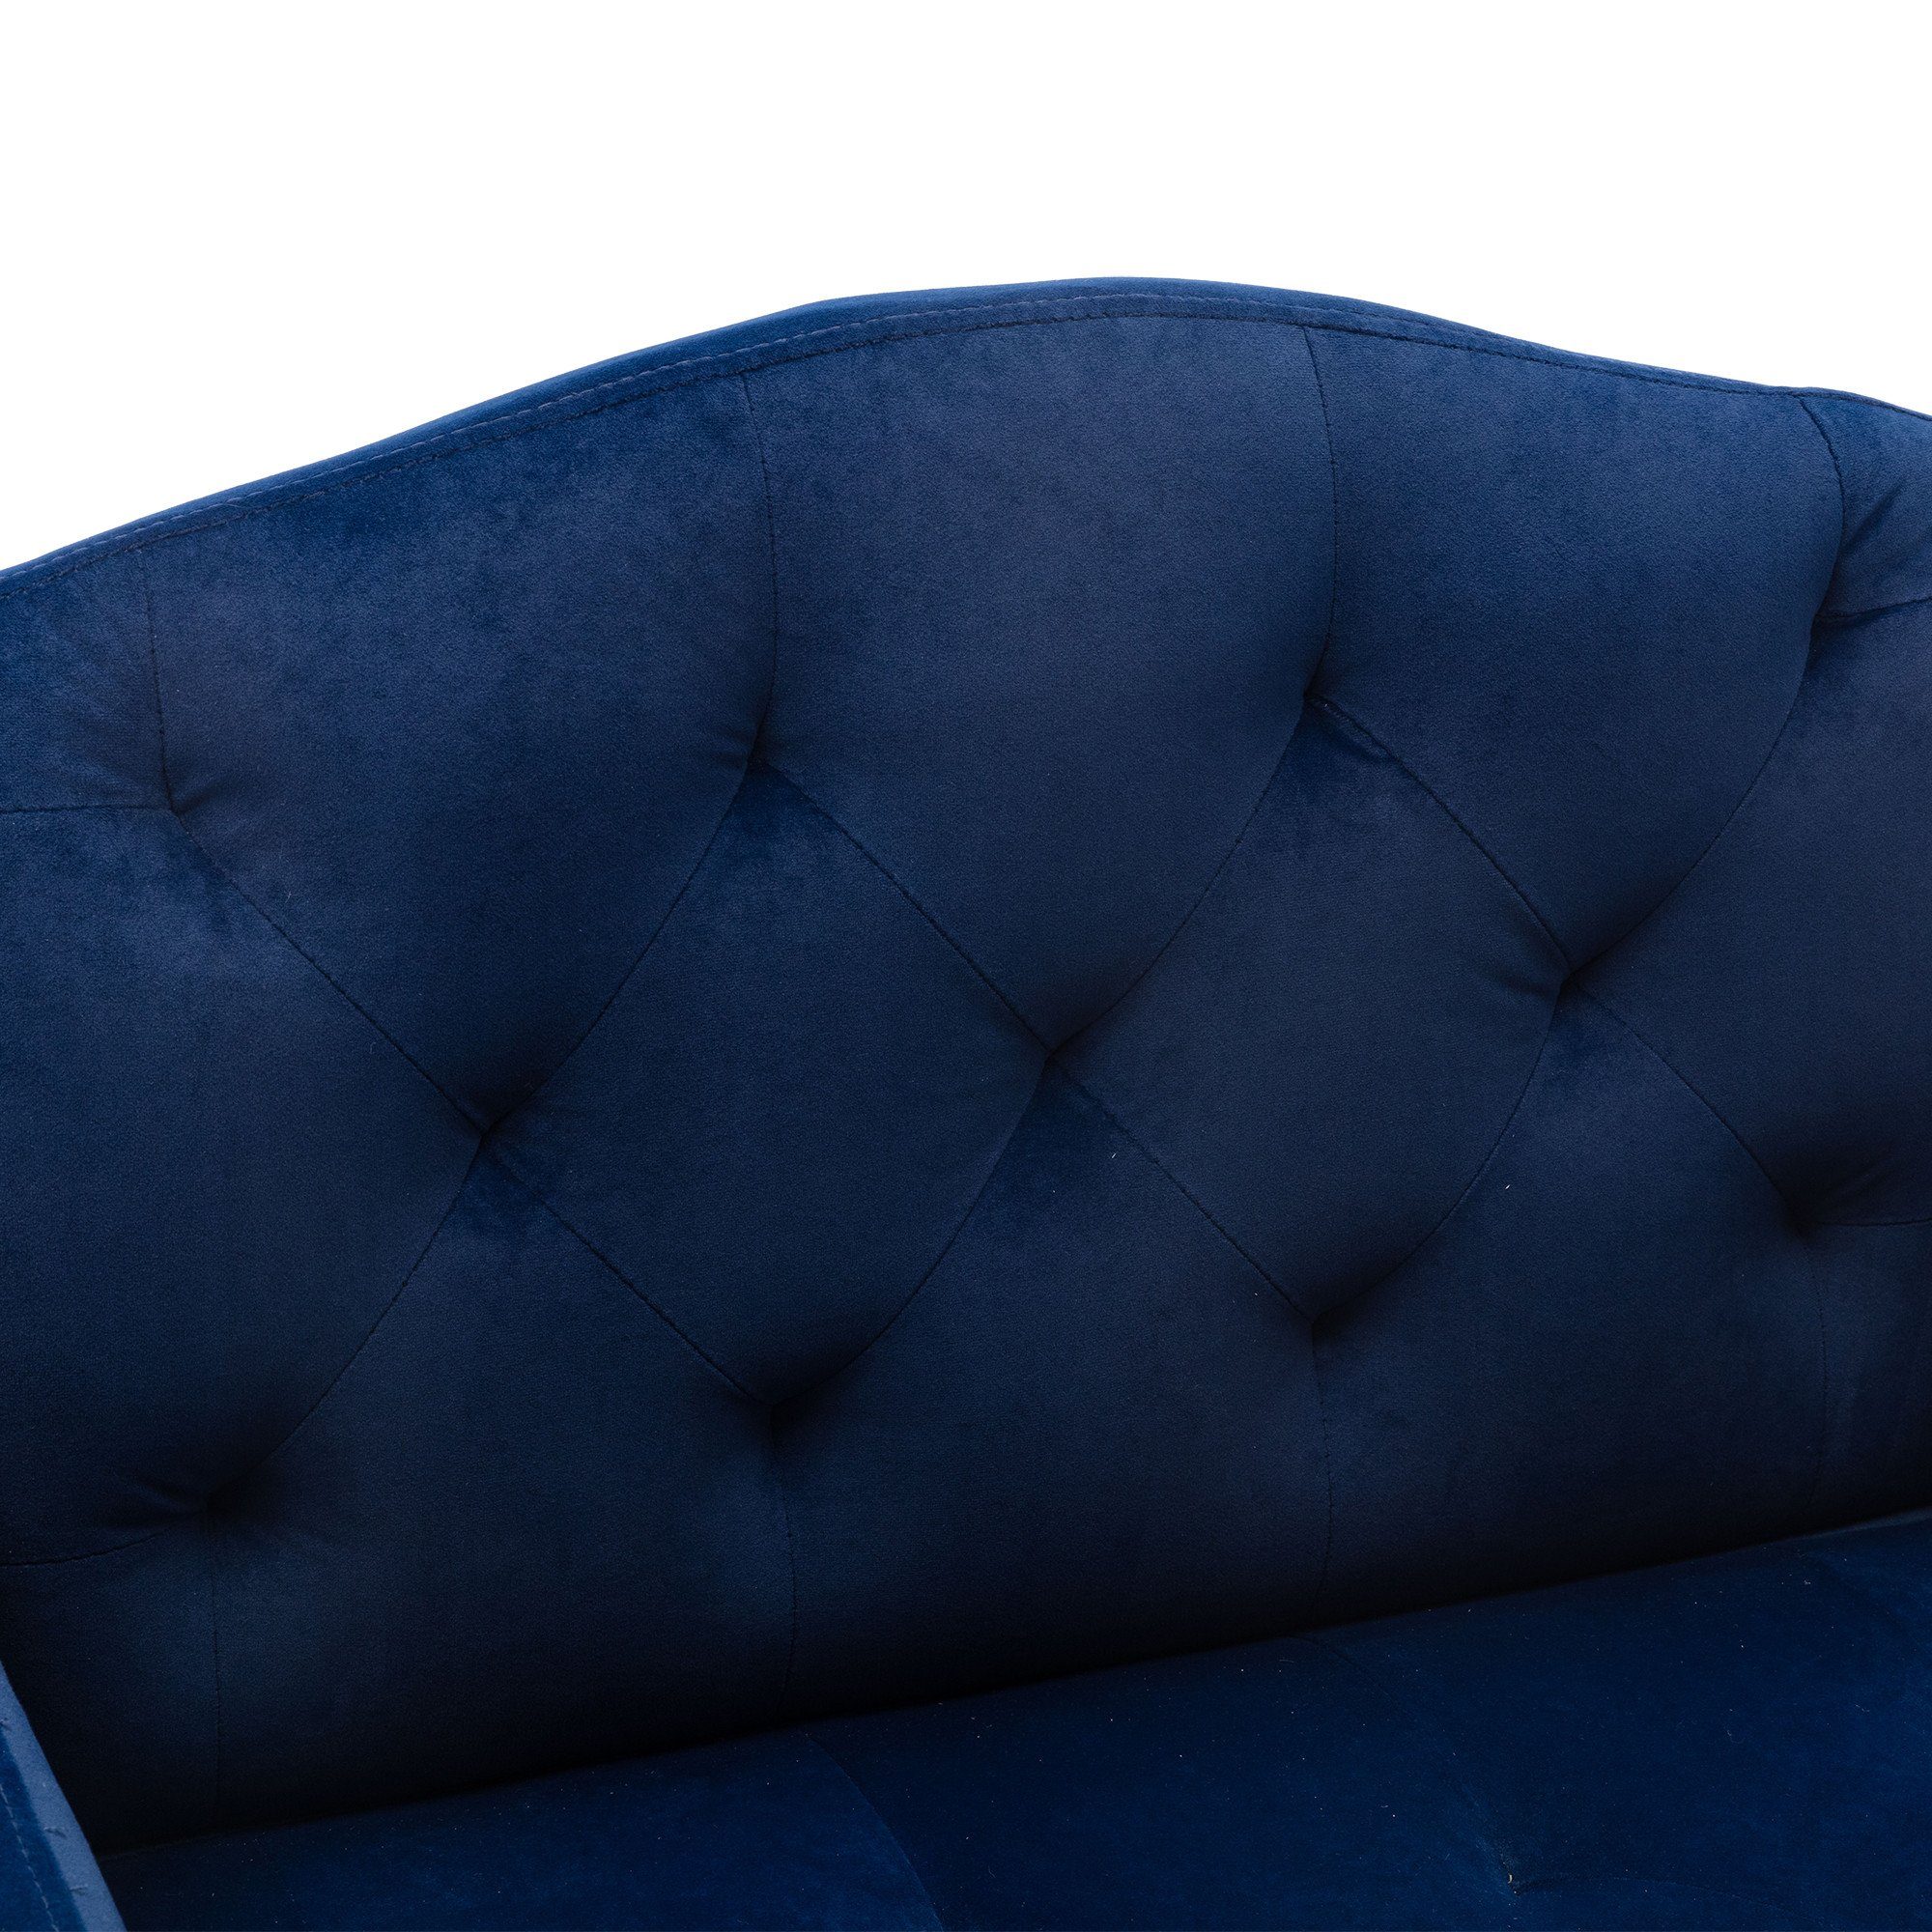 Freizeitsessel Vierbeiniger Akzentstuhl, roségoldenen Esszimmerstuhl Stuhl, blau OKWISH mit Füßen